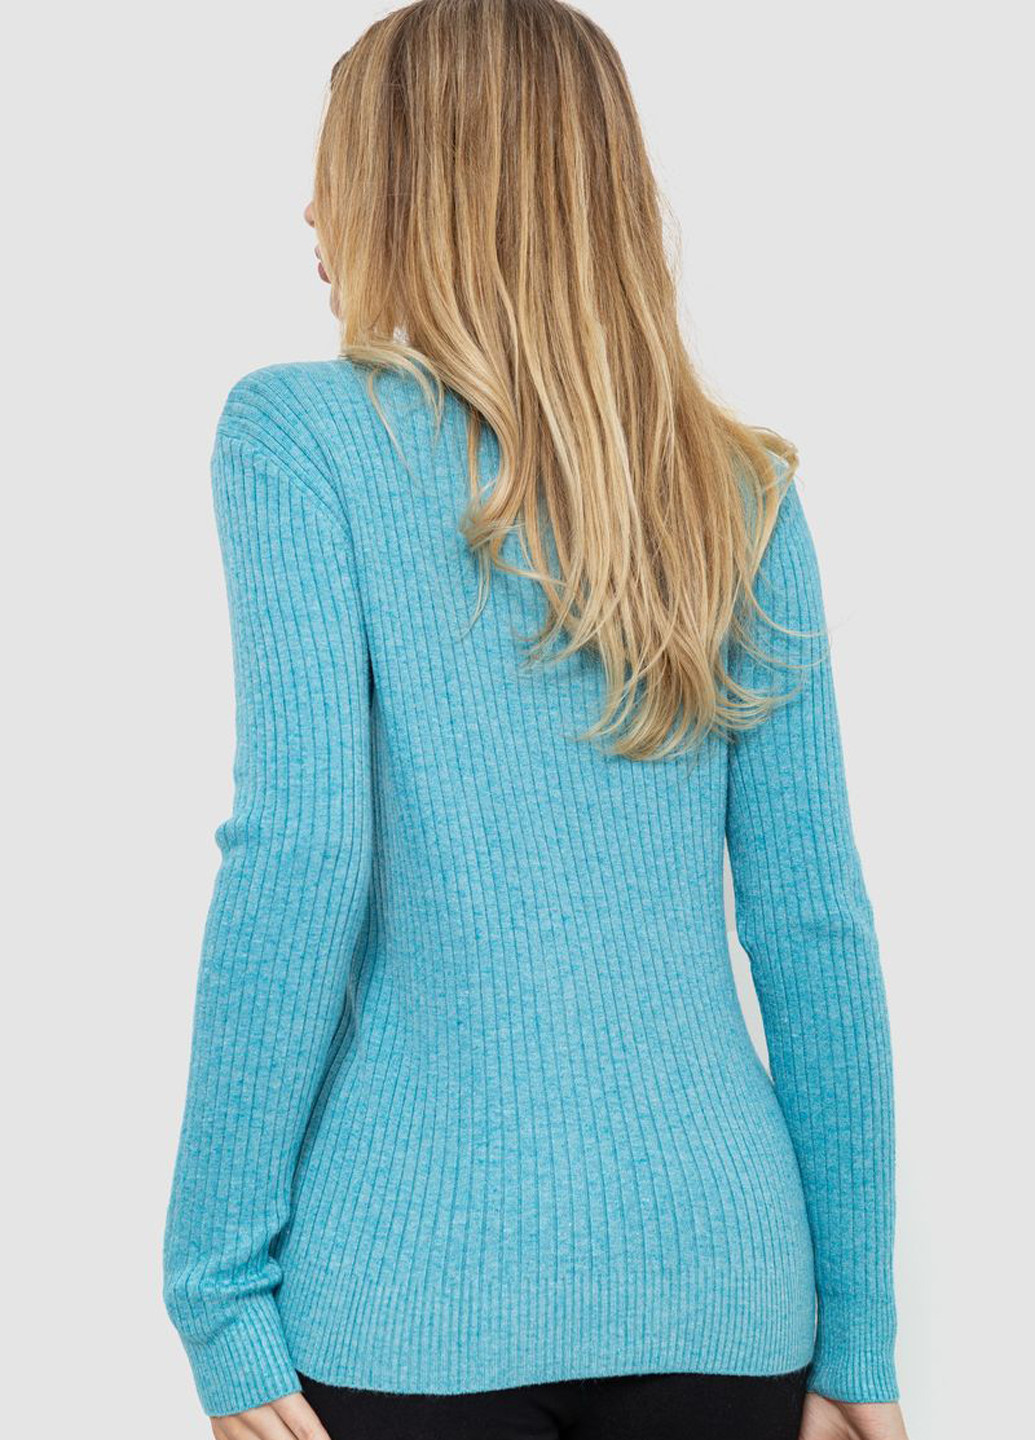 Темно-бірюзовий демісезонний пуловер пуловер Ager